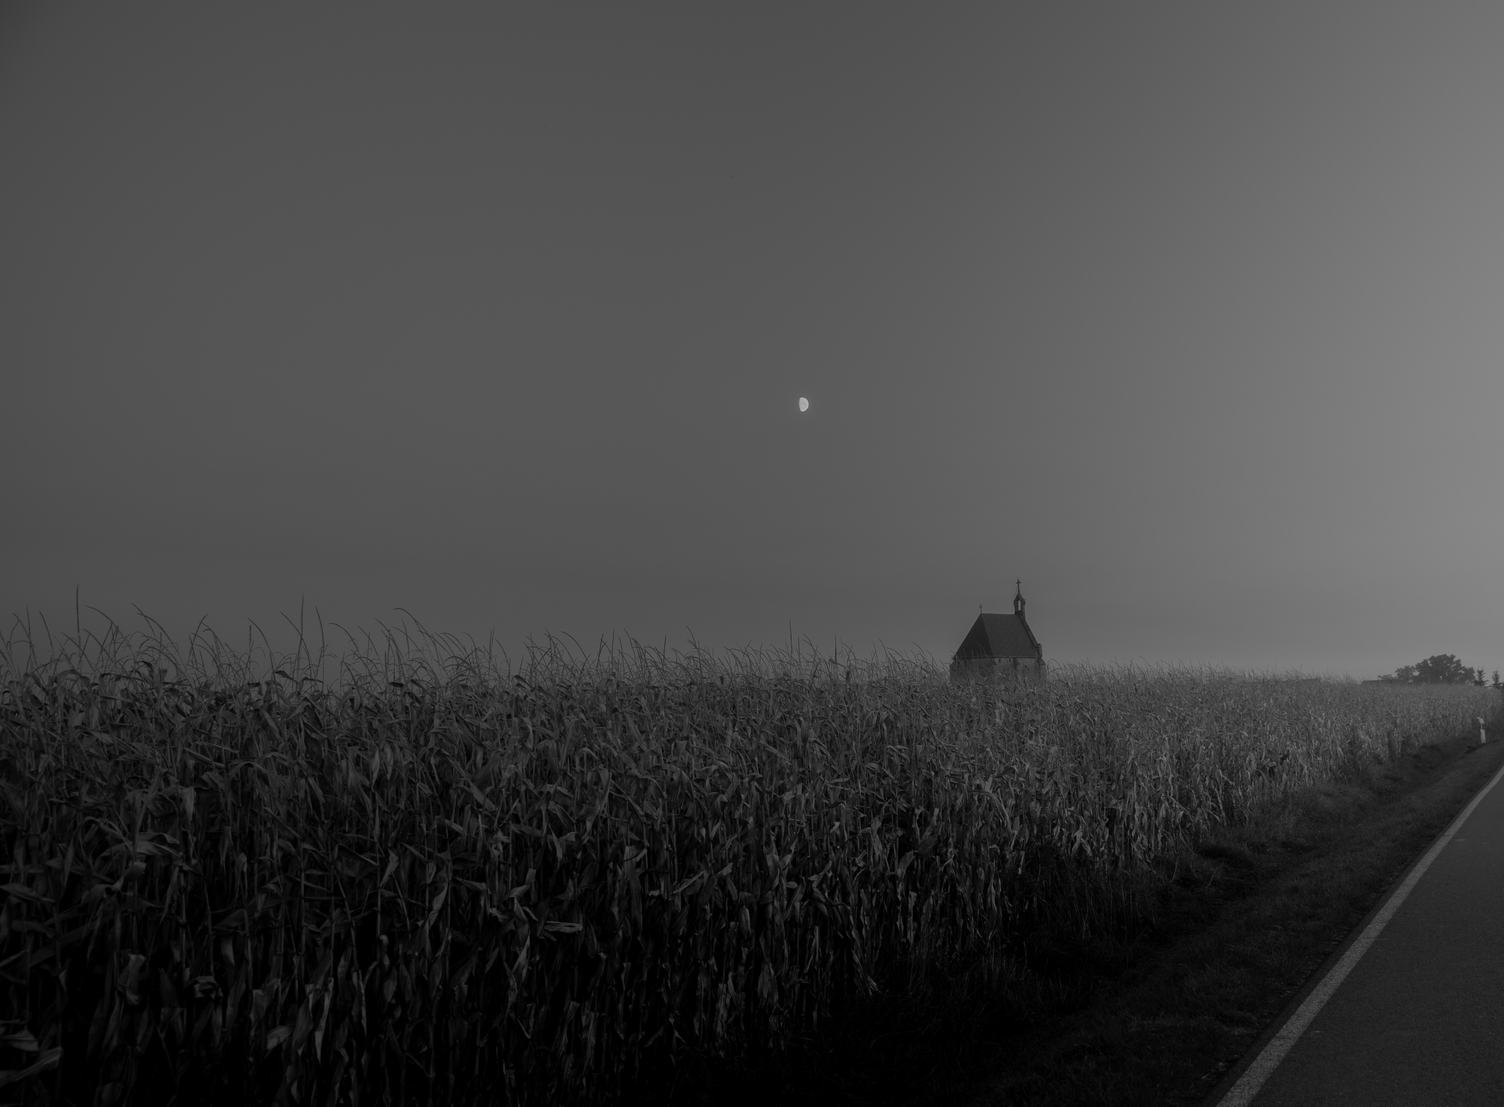 Dark Landscape, Little Church in a Cornfield